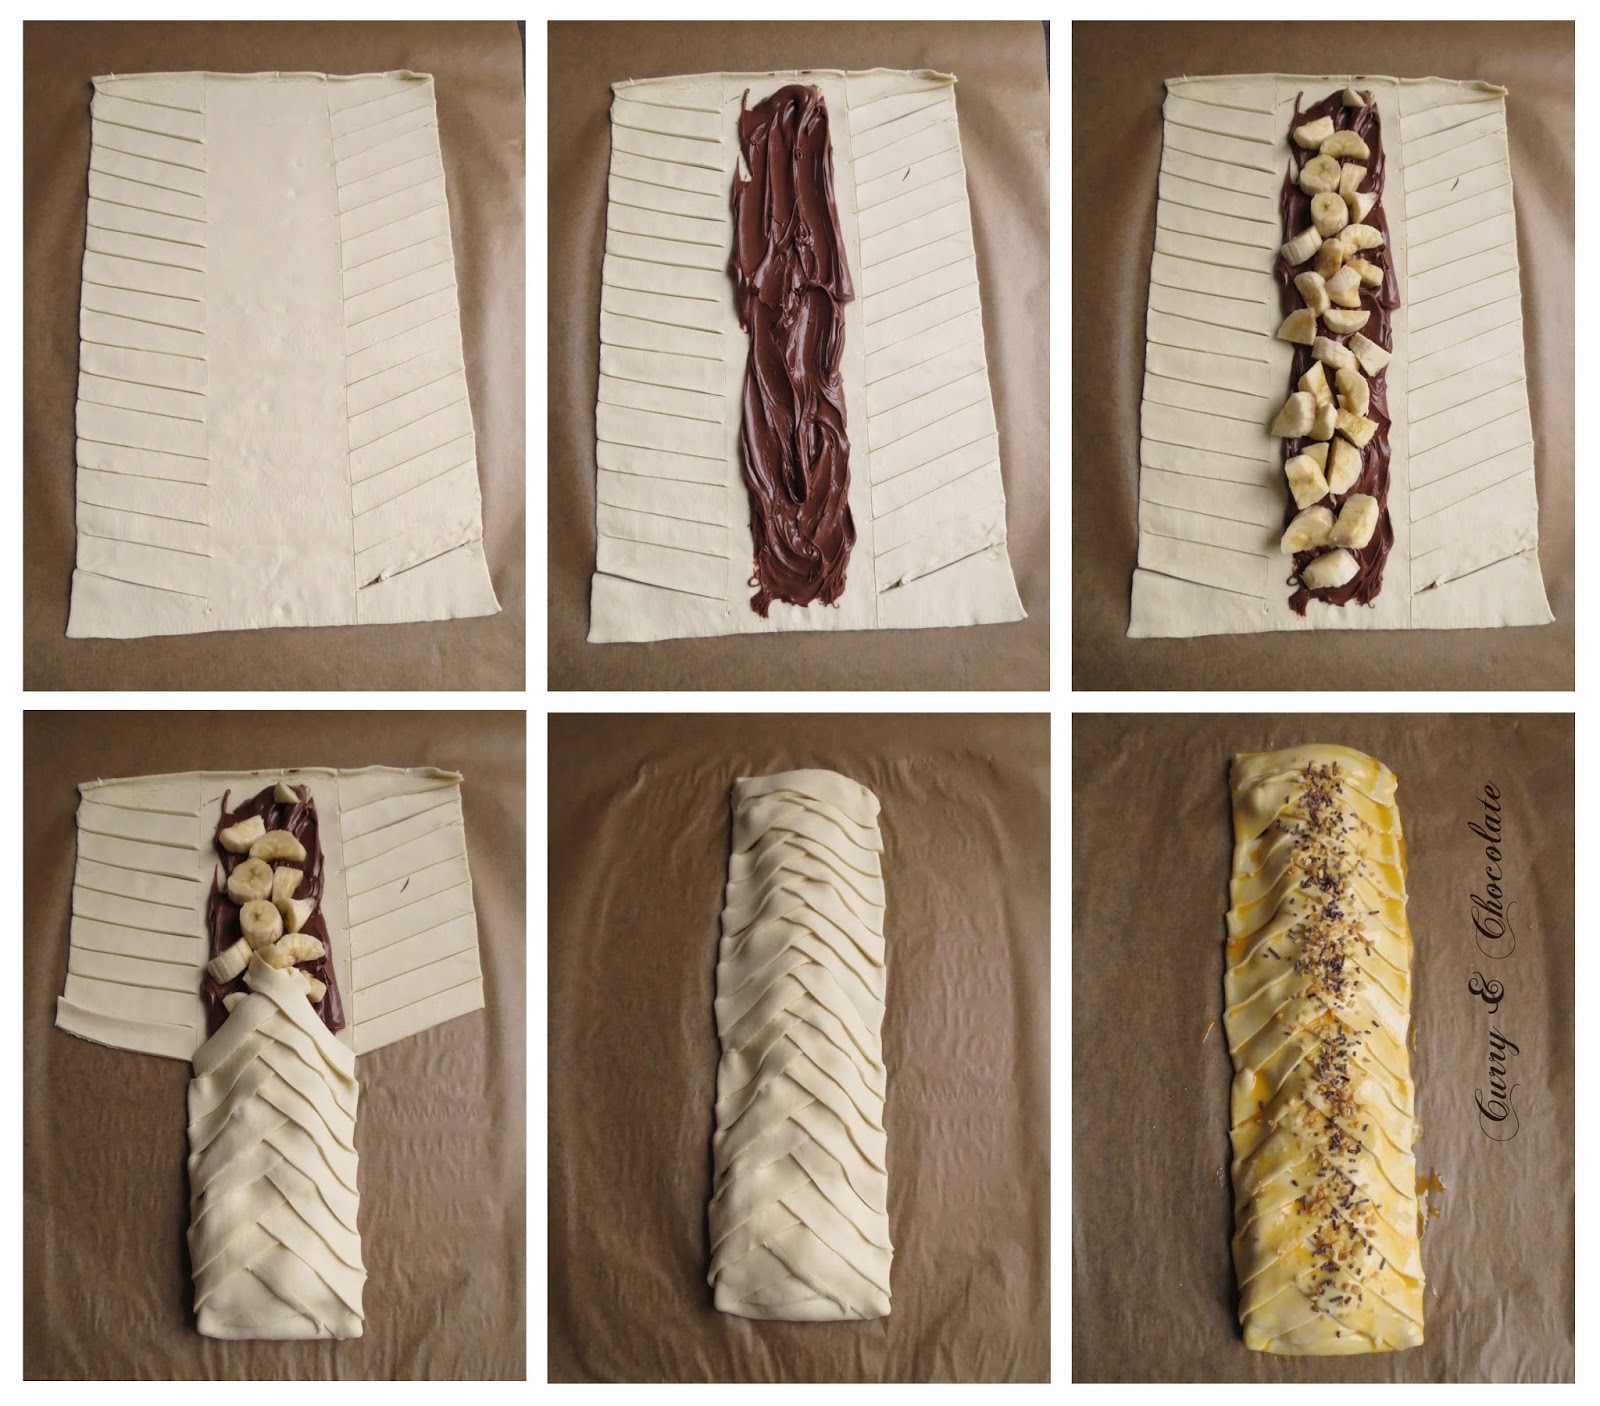 Trenza de Nutella y plátano – Nutella banana puff pastry braid